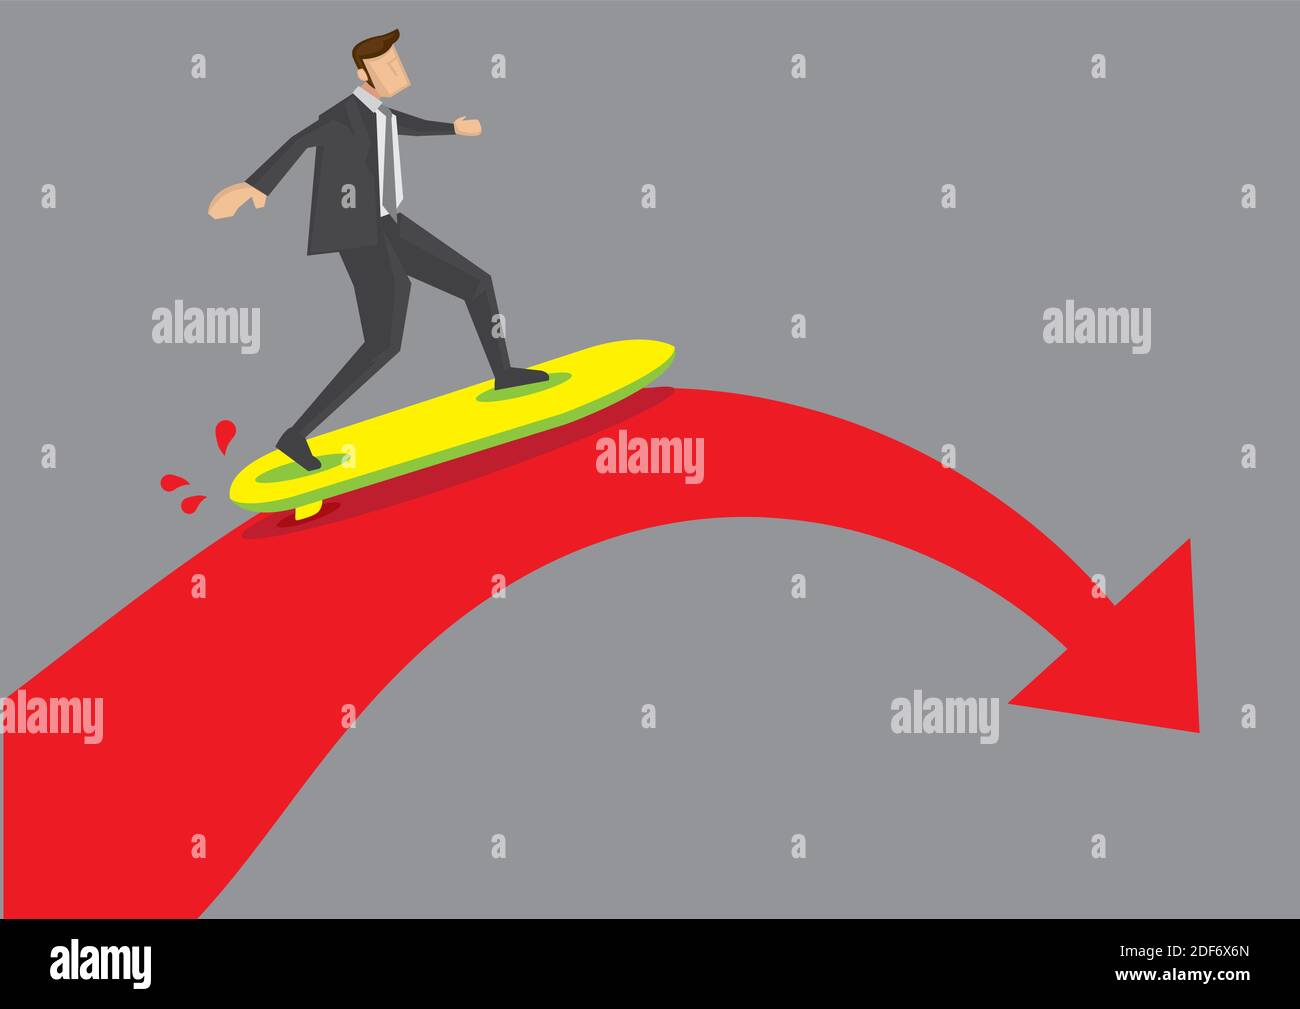 Dessin animé cadre d'affaires sur une planche de surf arrivant au point d'arrêt d'une flèche rouge audacieuse. Illustration vectorielle créative pour le concept sur b Illustration de Vecteur